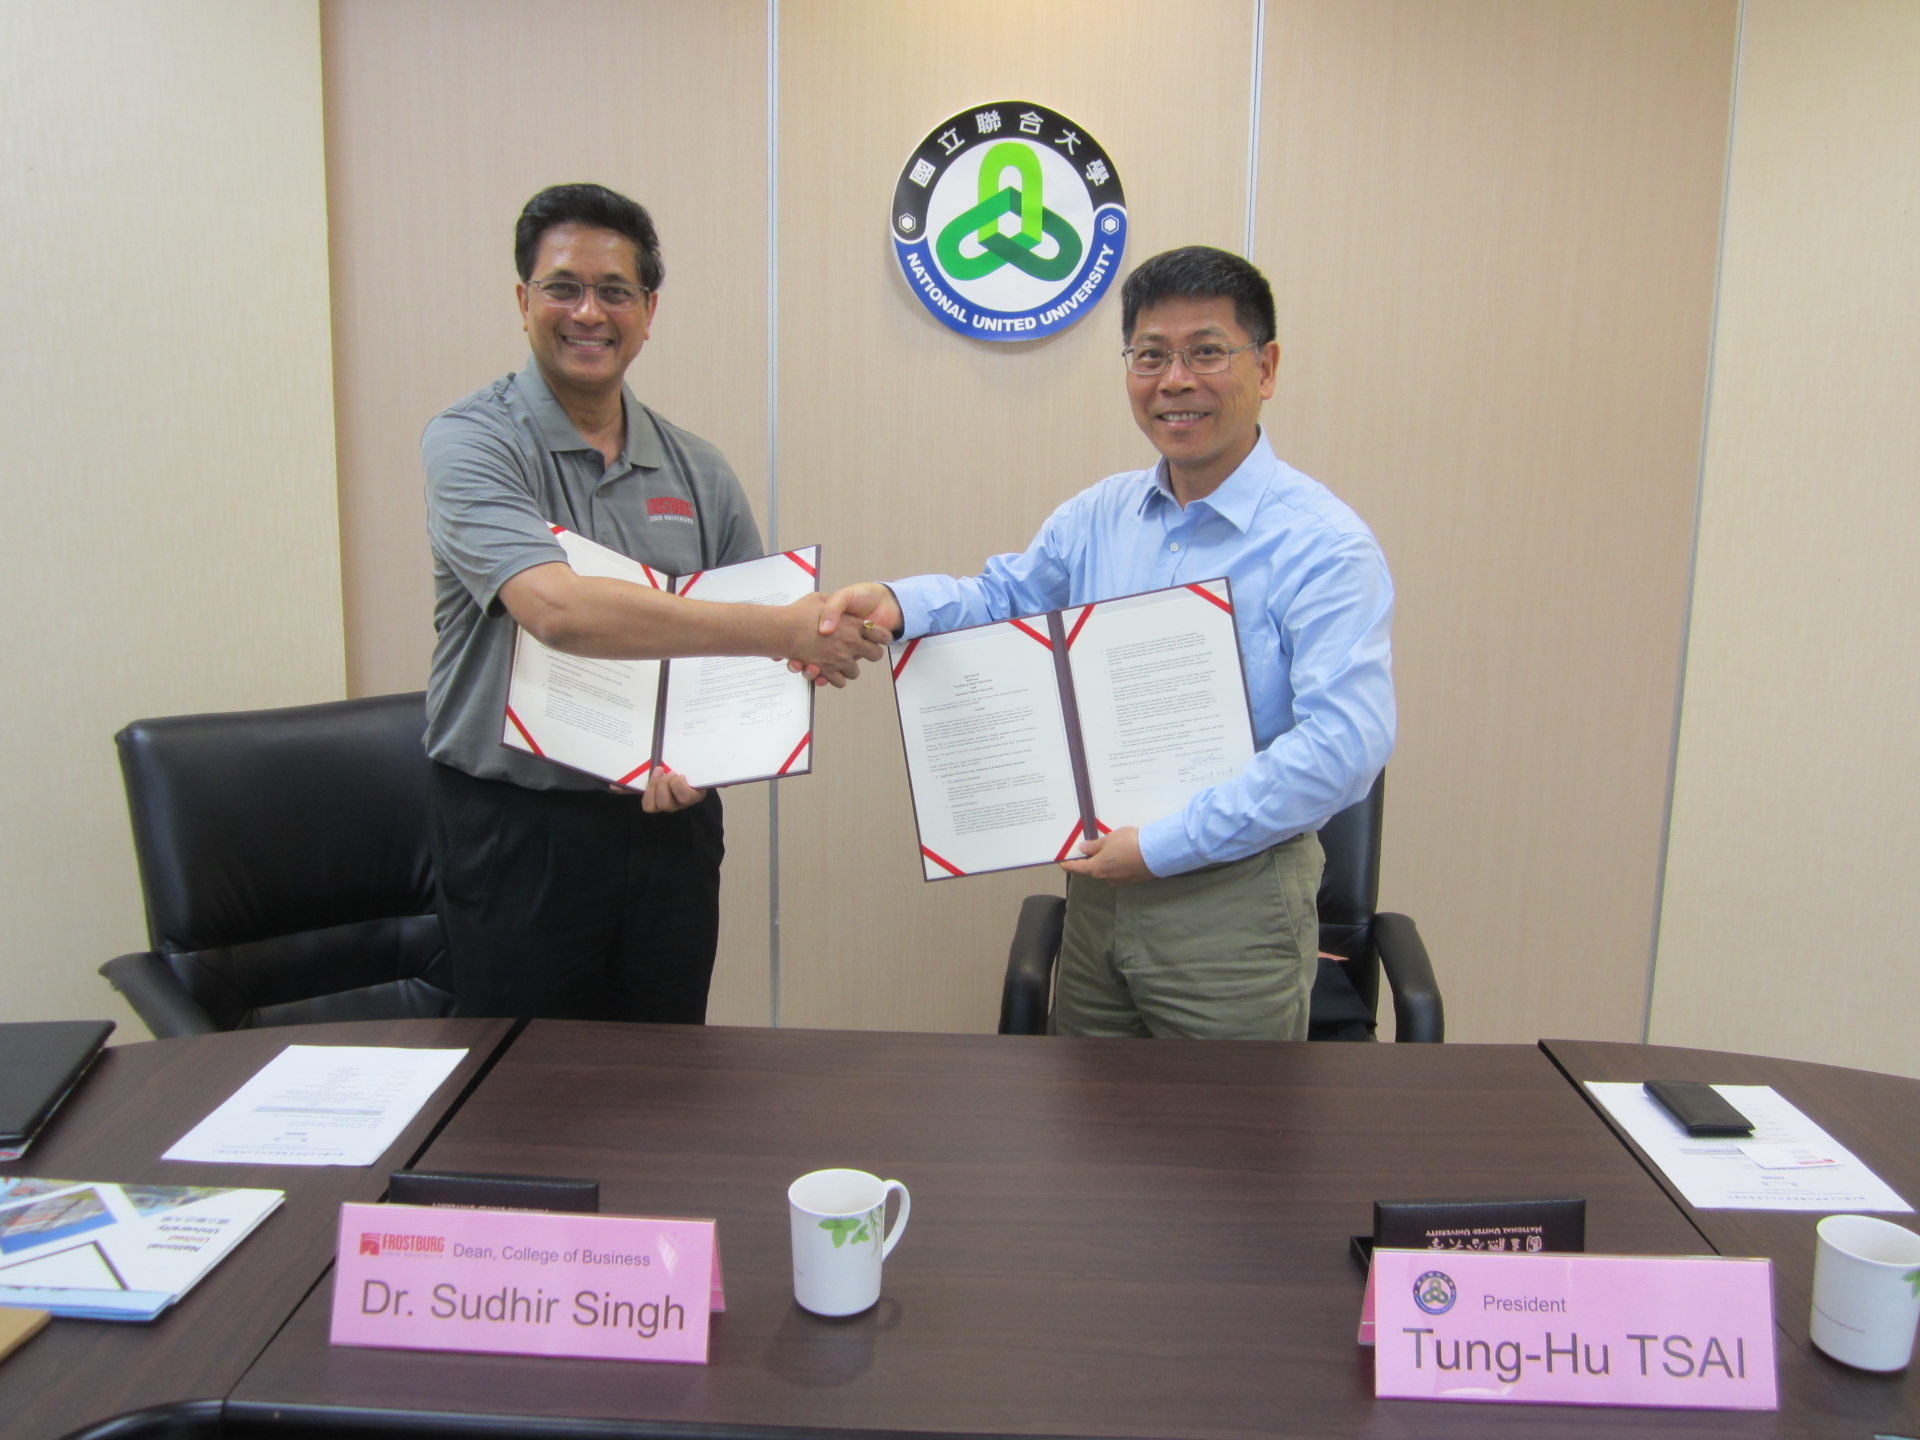 圖一、(左)Dr. Sudhir Singh院長代表與(右)國立聯合大學校長蔡東湖簽約完成